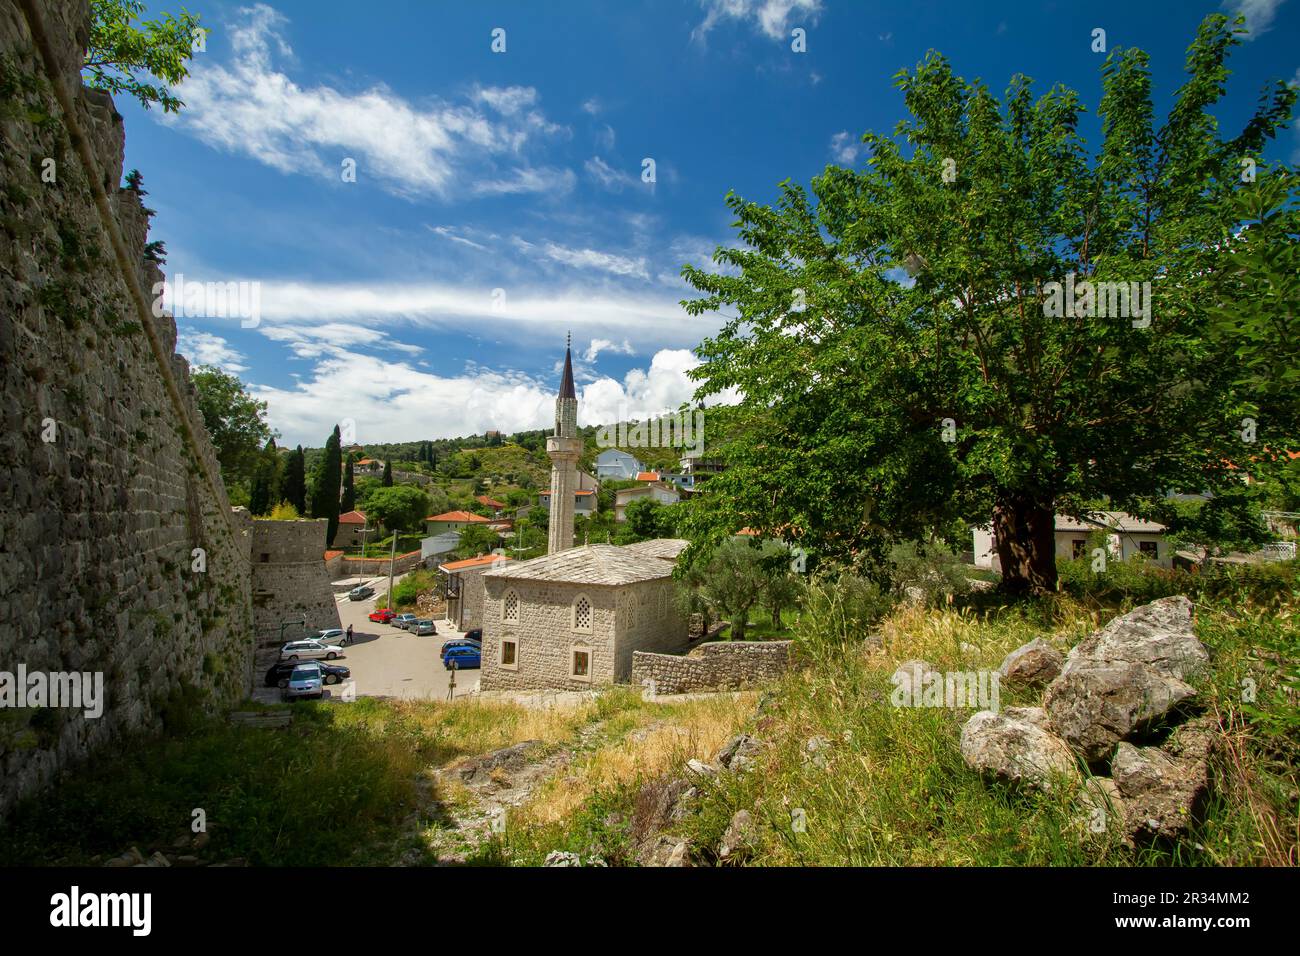 Aujourd'hui, la beauté d'Ahmet Bey et de son Lodge dans la ville de Stari Bar, au Monténégro. Château d'un côté, mûrier de l'autre. Banque D'Images